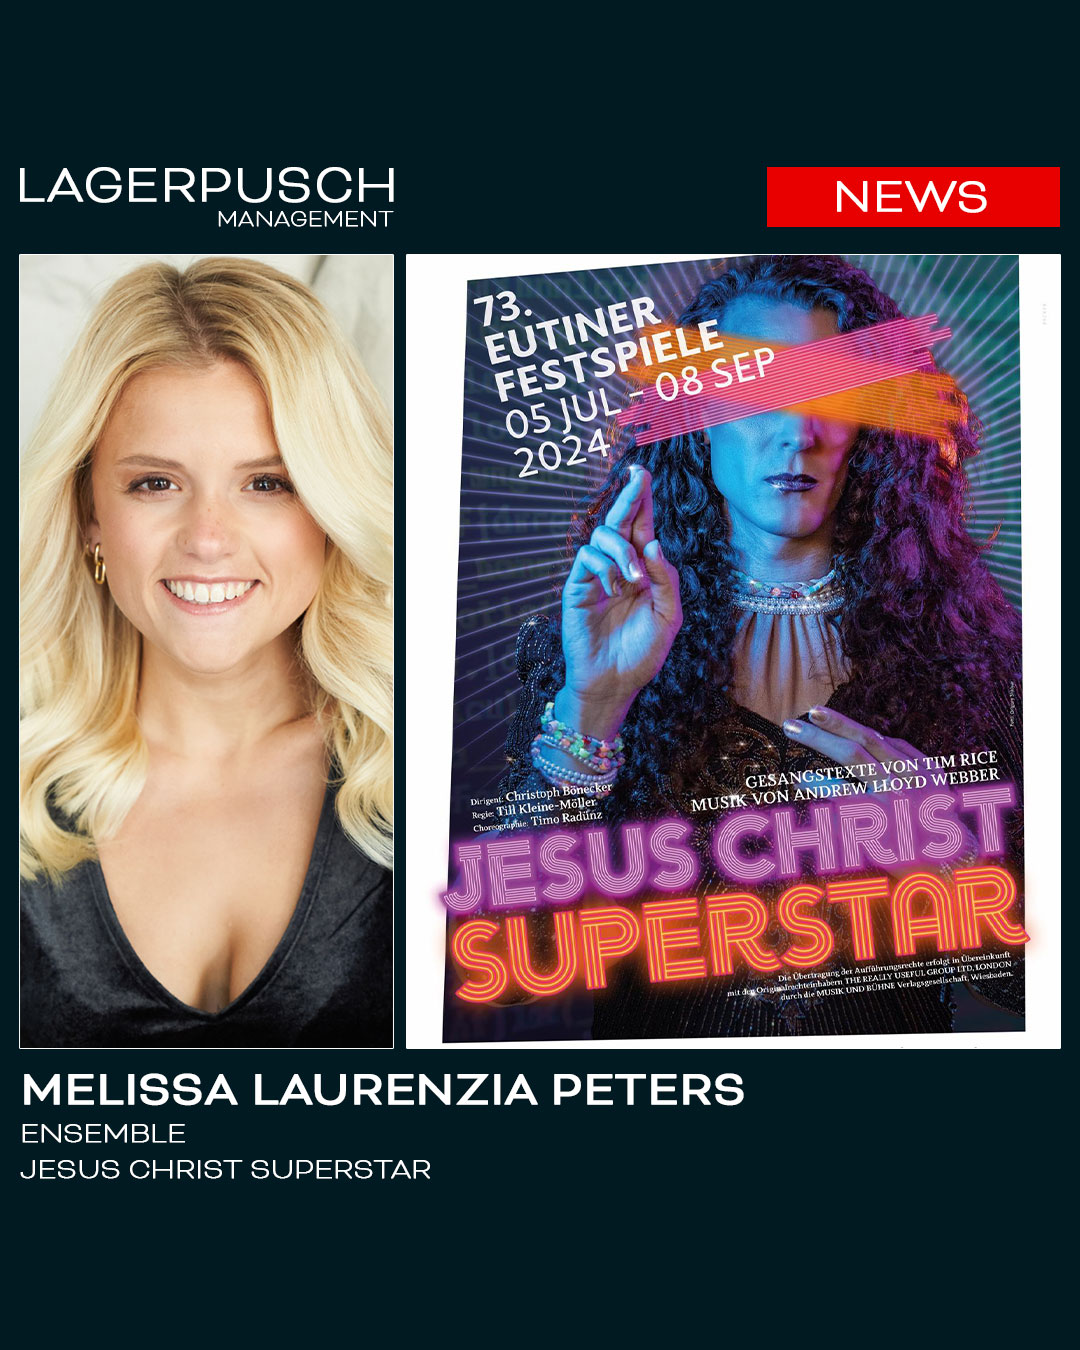 Melissa Laurenzia Peters im Ensemble von „Jesus Christ Superstar“ bei den Eutiner Festspielen